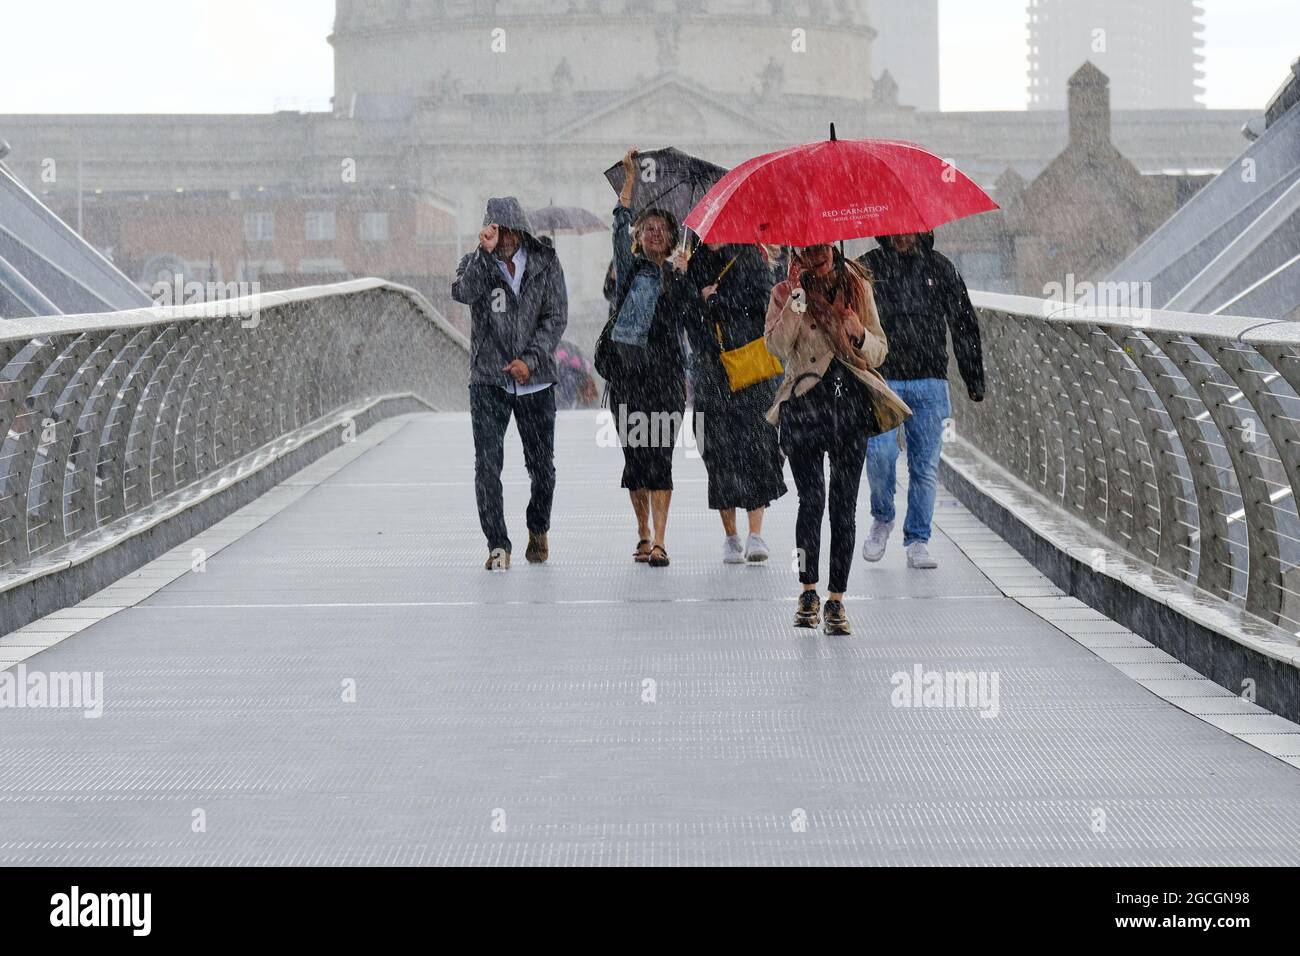 Londra, Regno Unito. La gente precipita attraverso il Millennium Bridge durante una pesante discesa mentre il tempo inregolato continua nella capitale causando le inondazioni di flash. Foto Stock